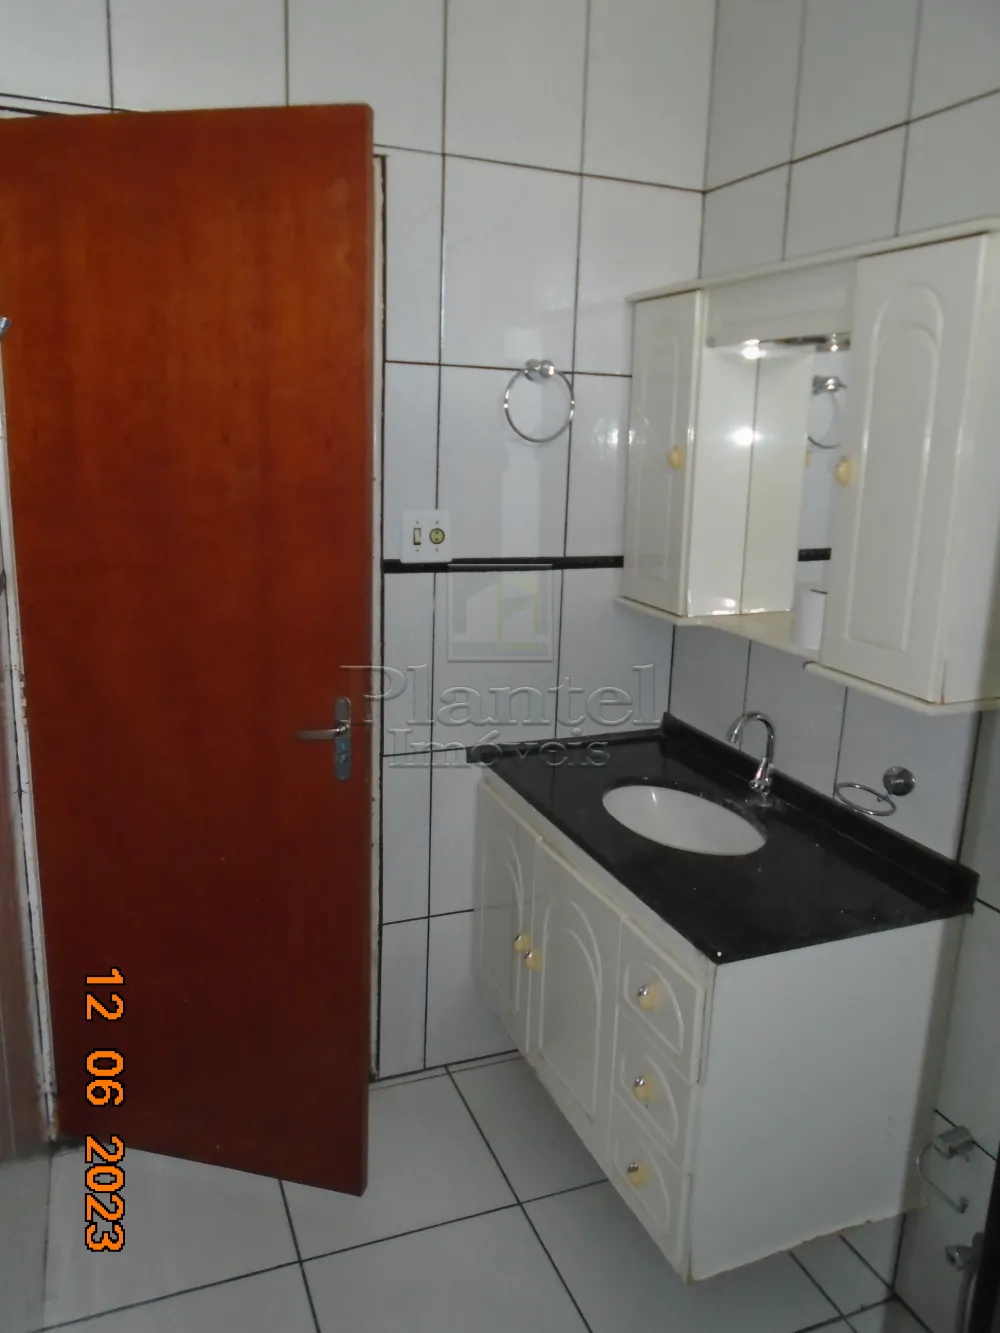 Imobiliária Ribeirão Preto - Plantel Imóveis - Apartamento - Sumarezinho - Ribeirão Preto